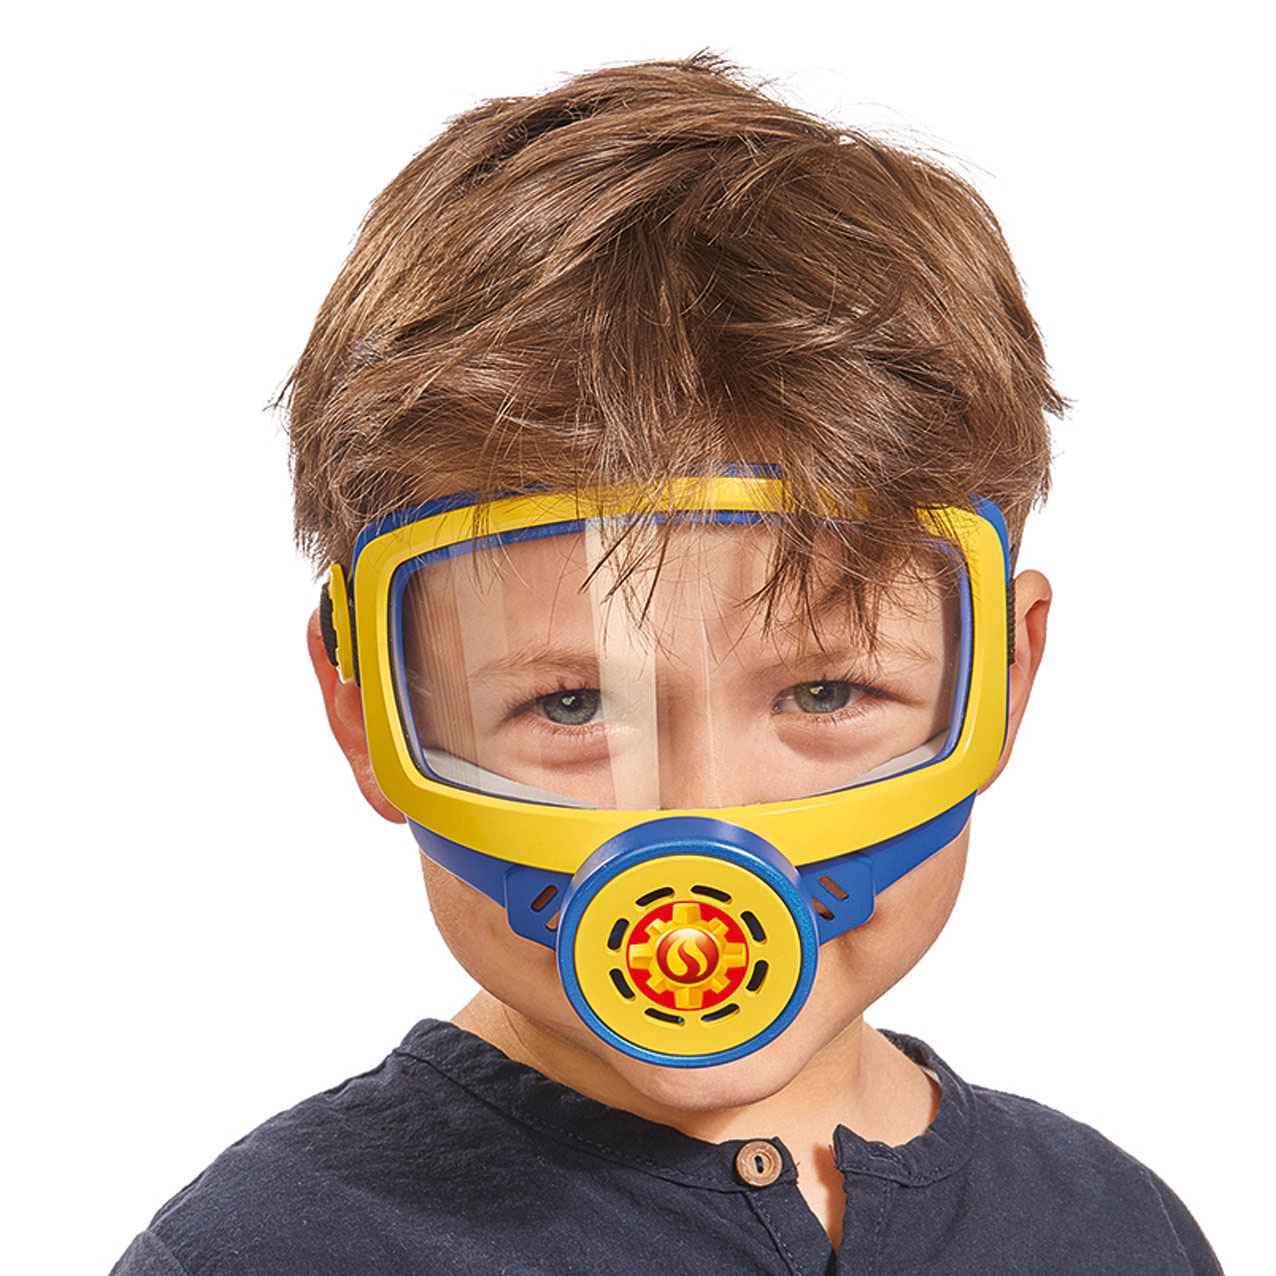 Включи маску есть. Сэм Oxygen Mask. Детские противогазы. Дети в противогазах. Игрушечный противогаз для детей.